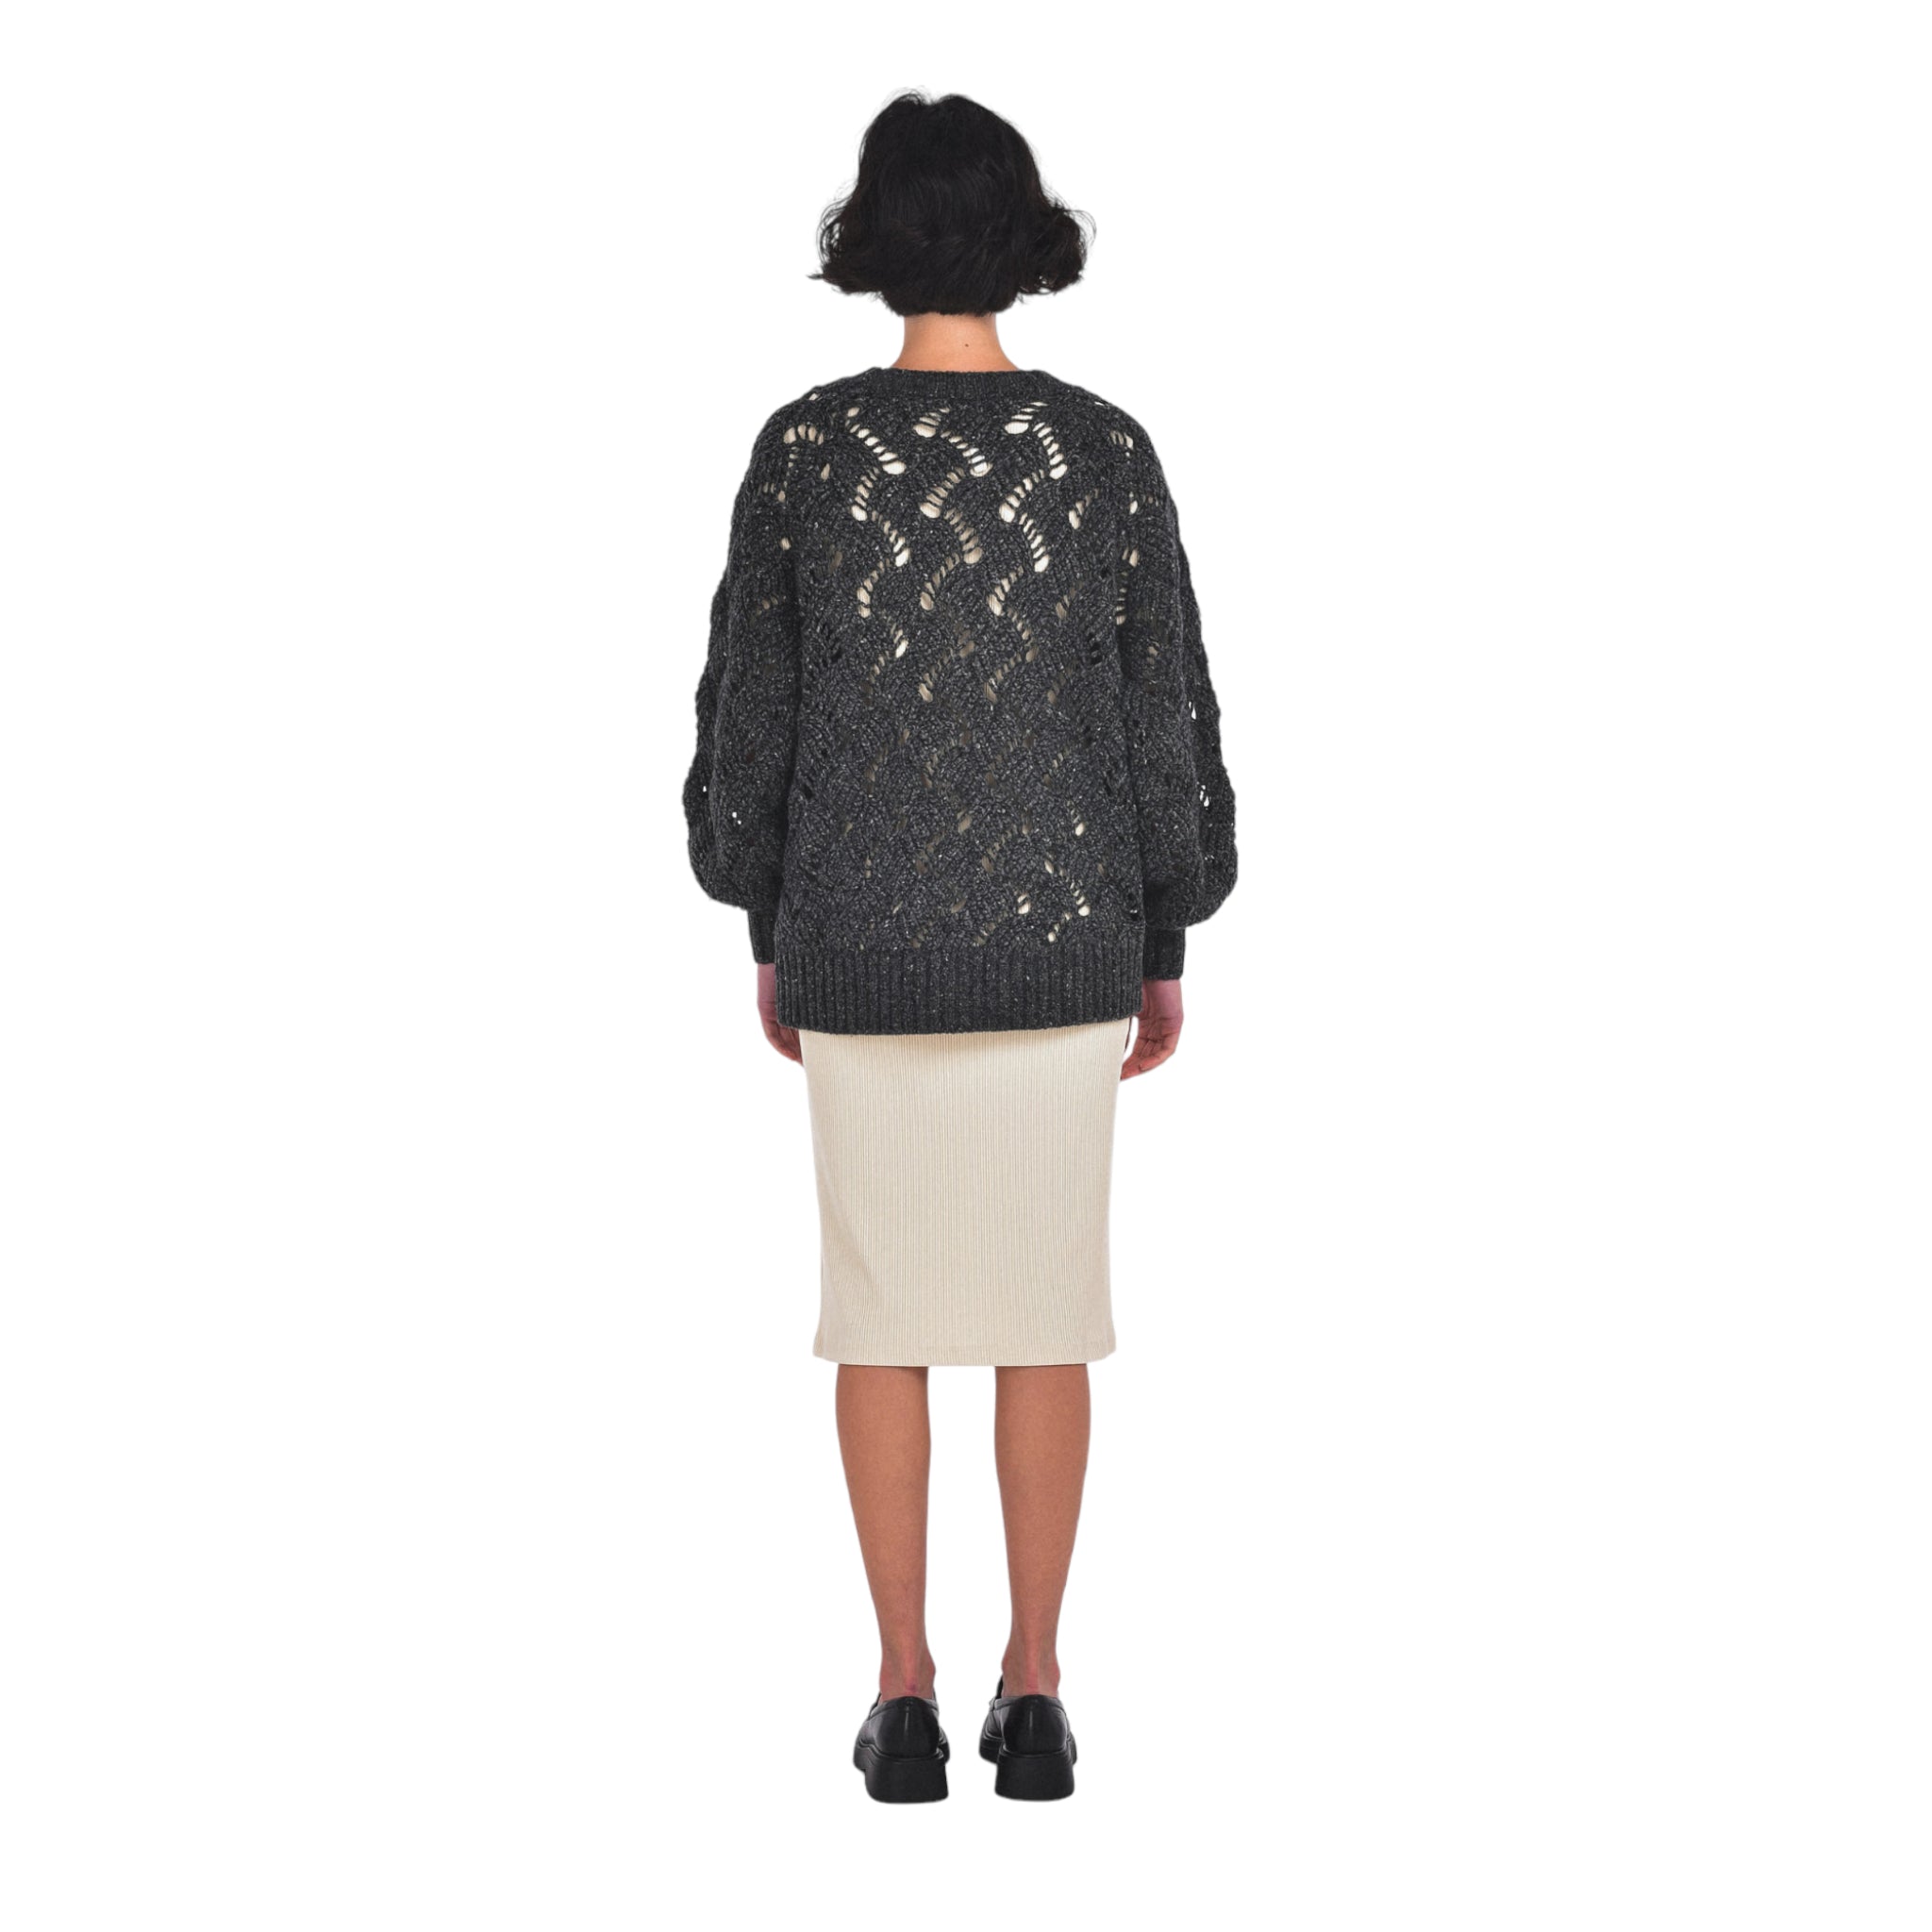 Lynn Cardigan Sweater in Black Mix-Veri Peri